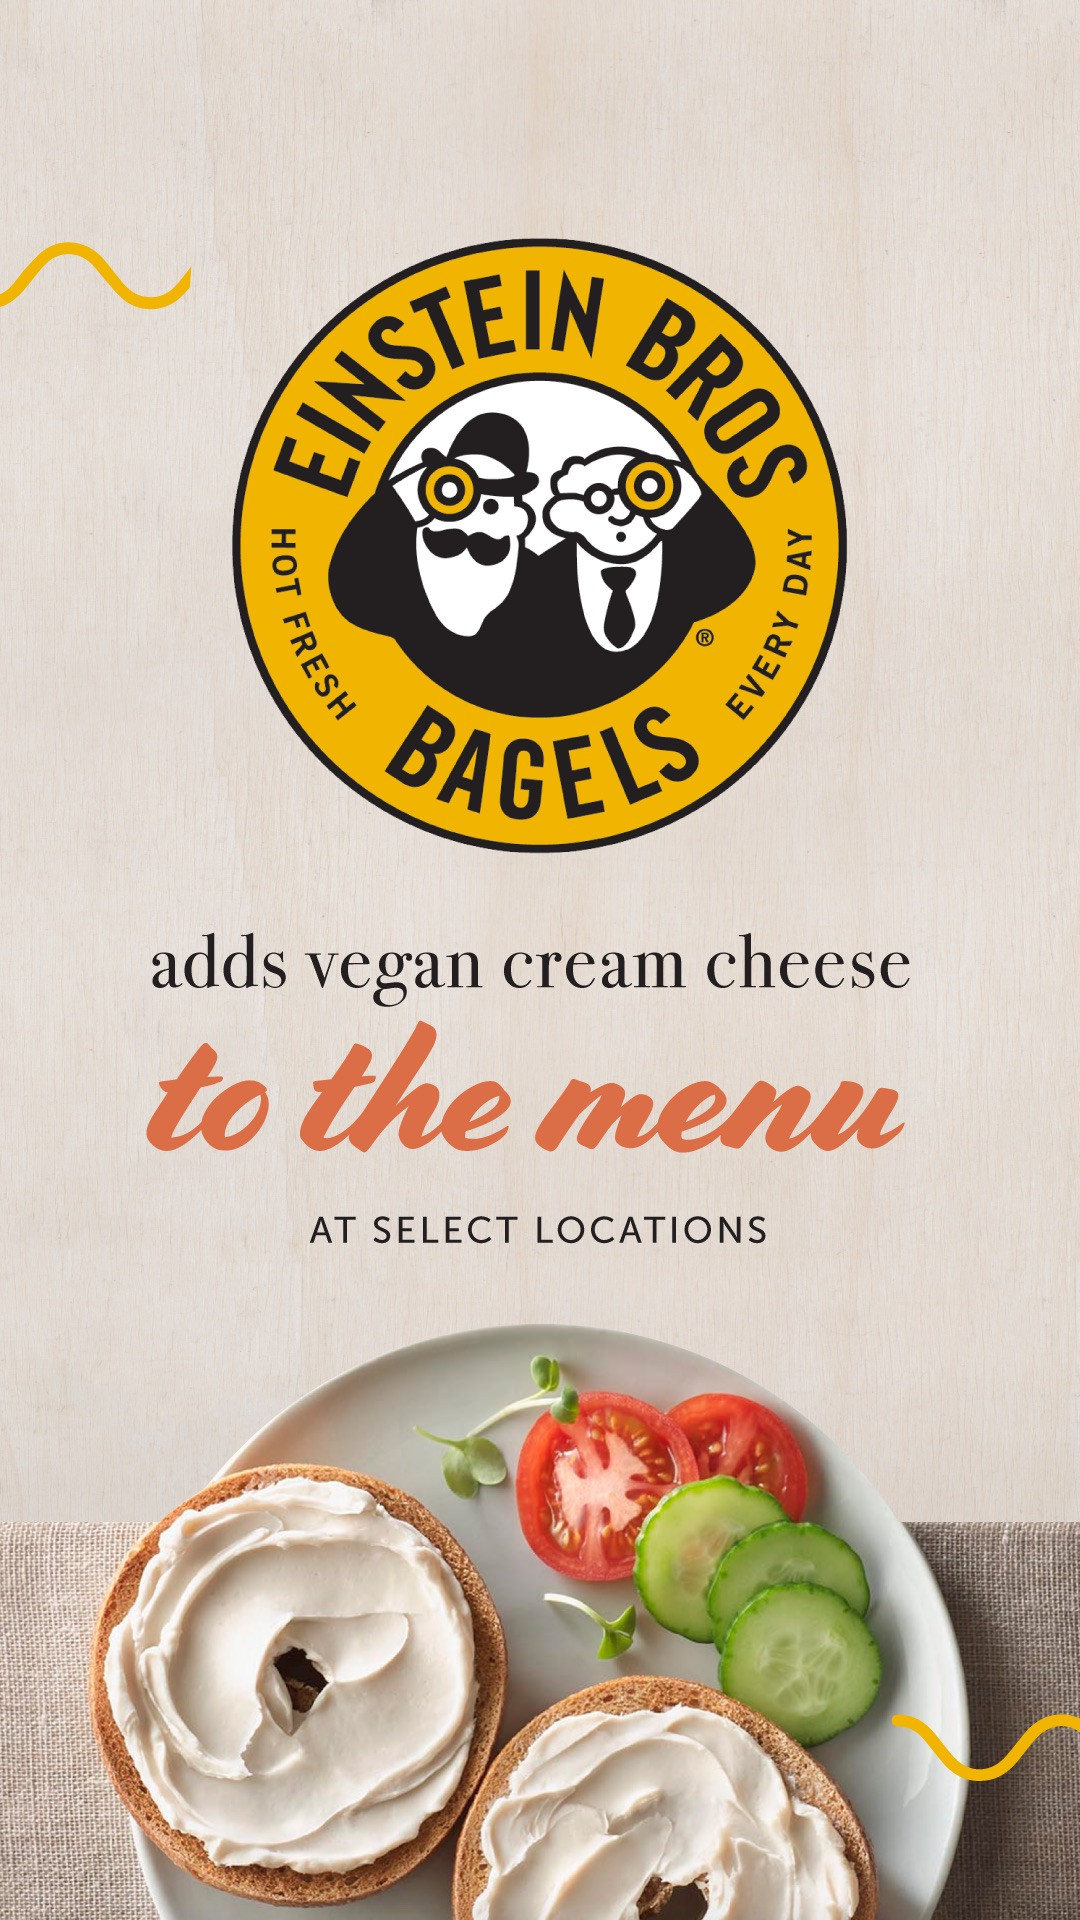 Einsteins Bagels Vegan
 Einstein Bros Bagels Adds Vegan Cream Cheese at Select